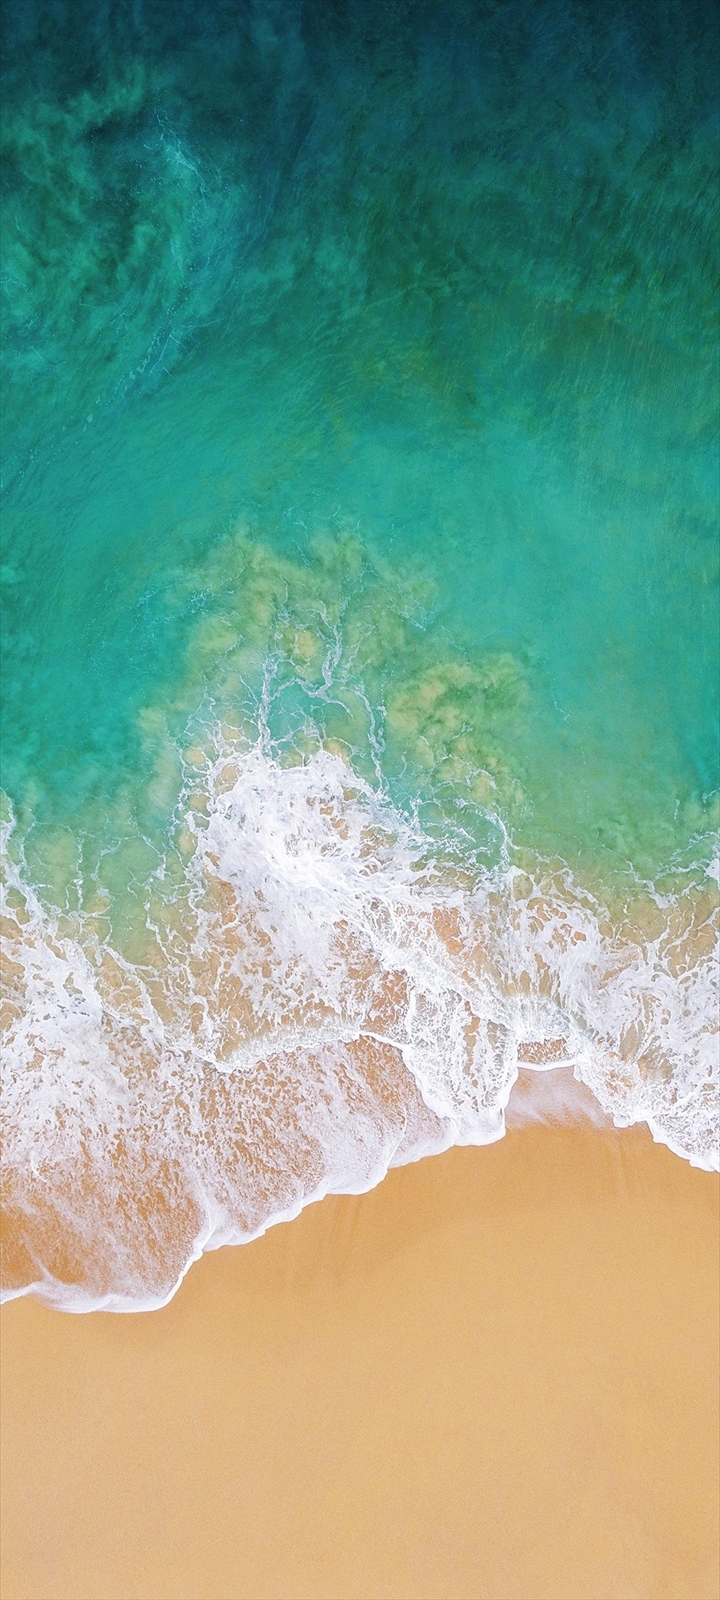 俯瞰視点 綺麗な海と浜辺 Moto E7 Power Androidスマホ壁紙 待ち受け スマラン